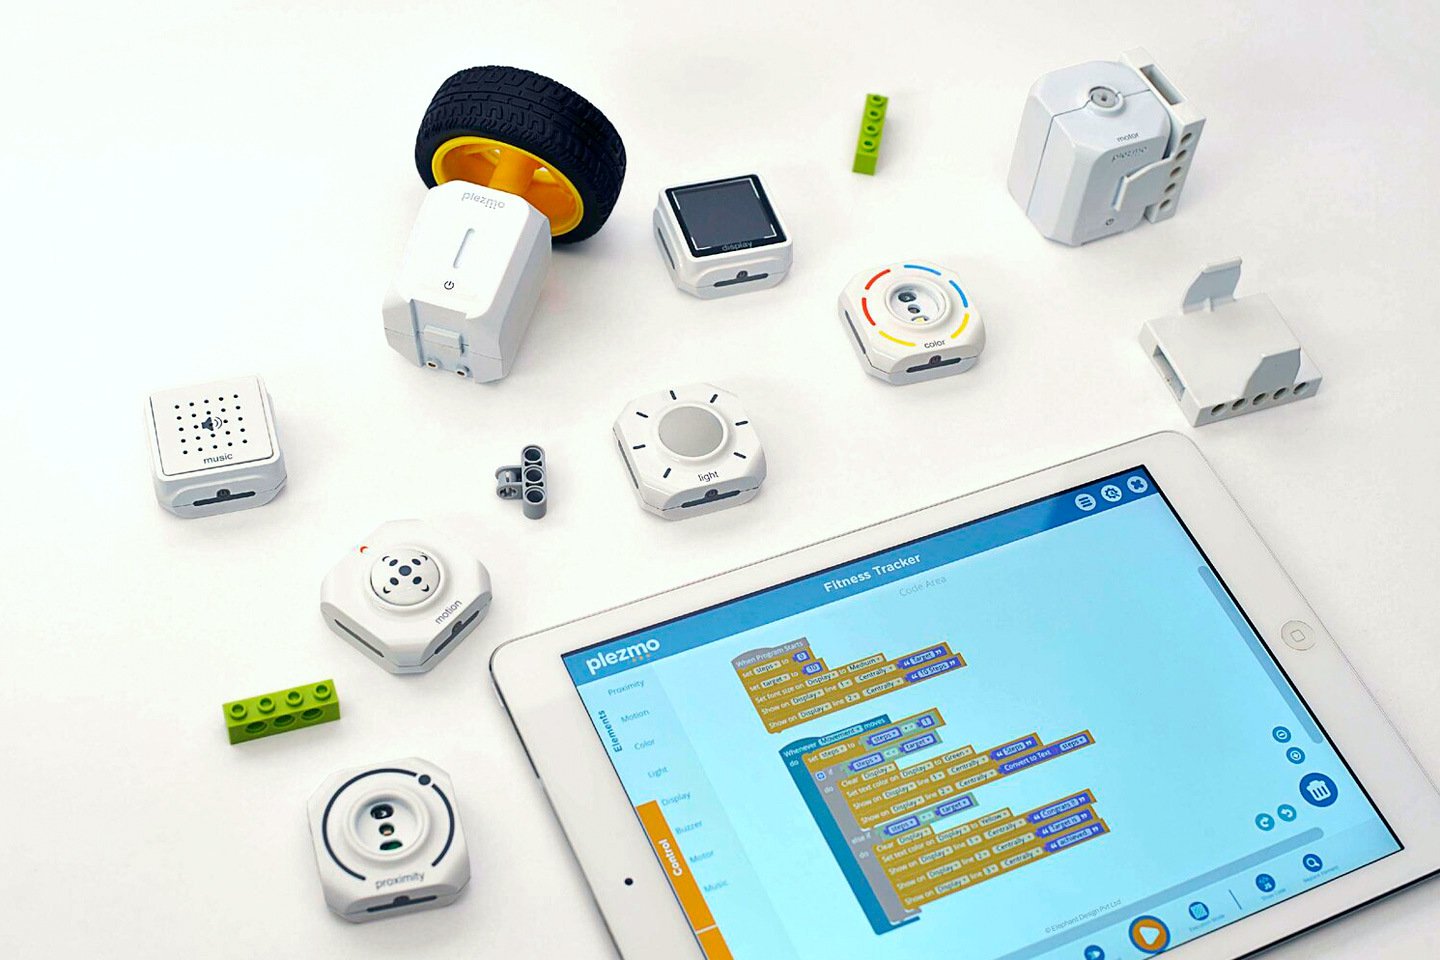 Plezmo to wielokrotnie nagradzana zabawka modułowa IoT, która wprowadza dzieci w podstawy kodowania